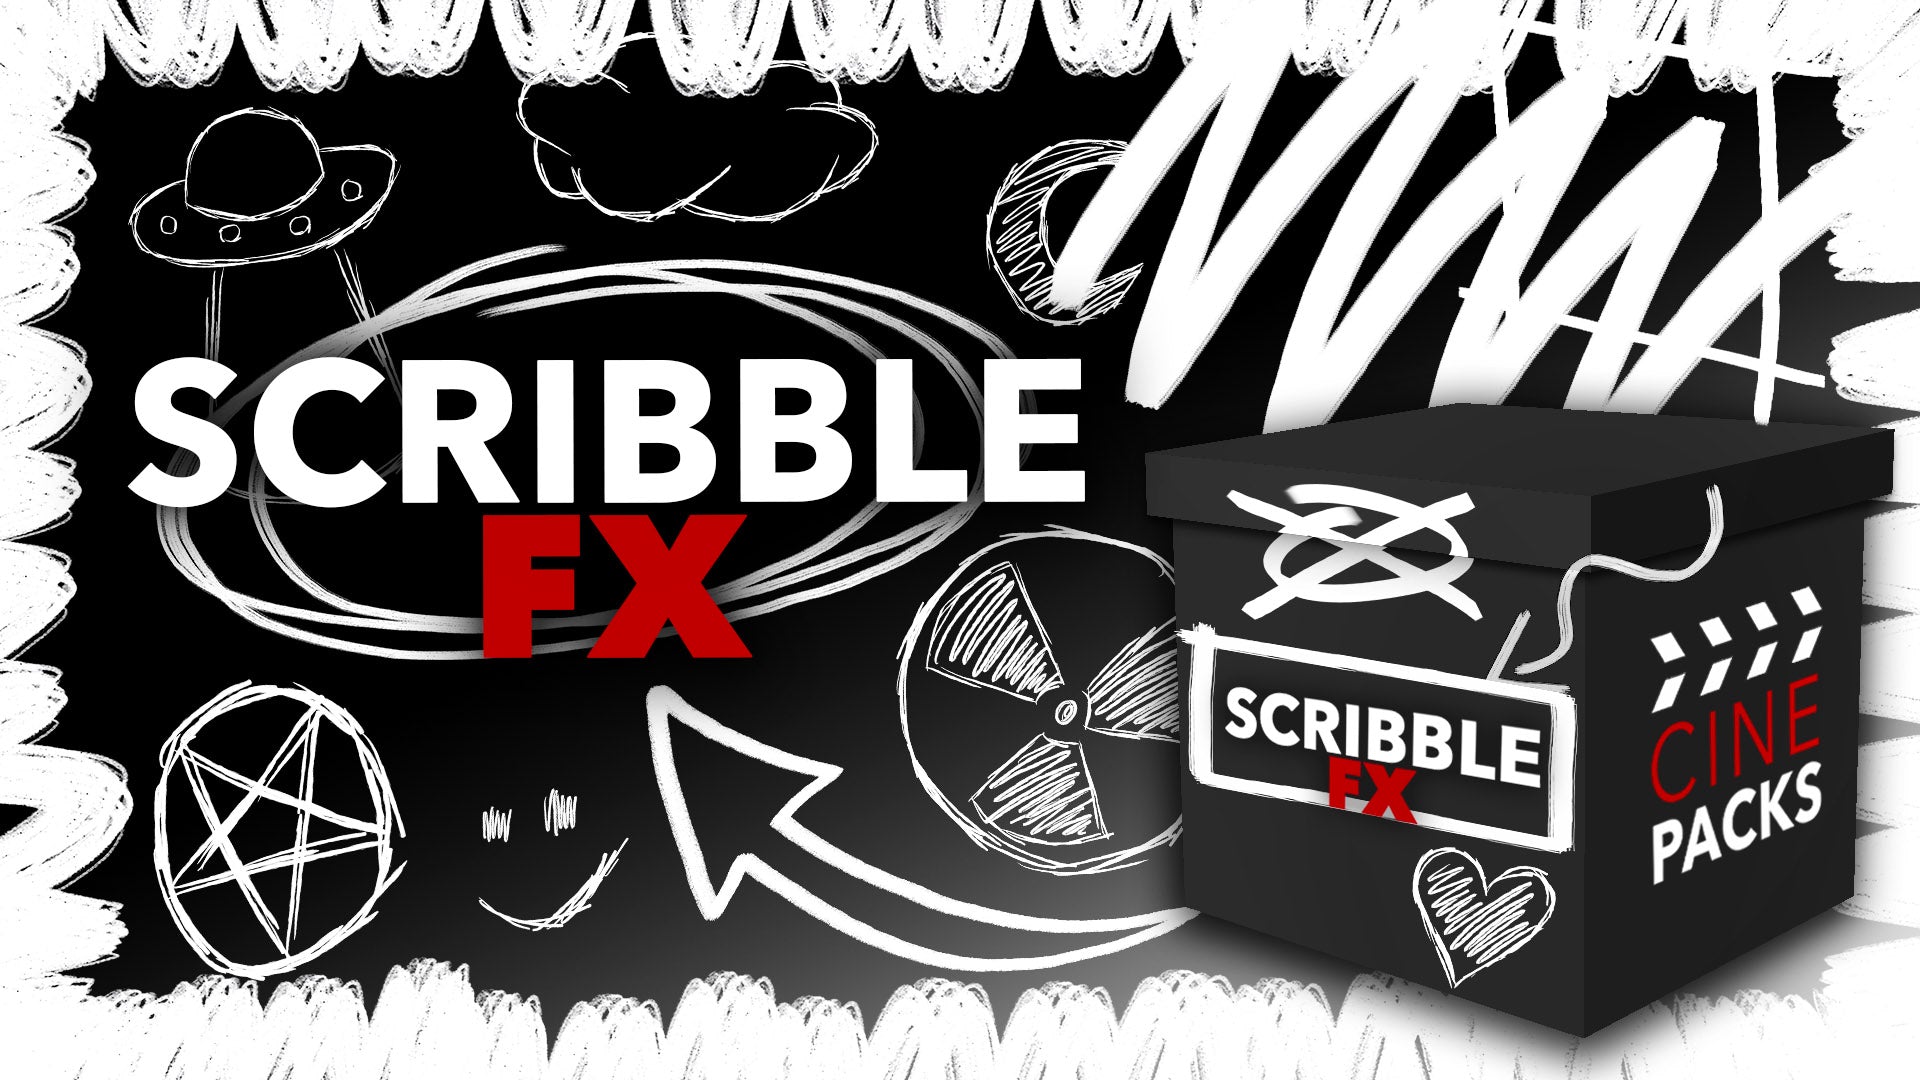 CinePacks – Scribble FX 300多个多彩手绘涂鸦粗糙垃圾美学字母标记线条包装形状框架视频素材 图片素材 第1张